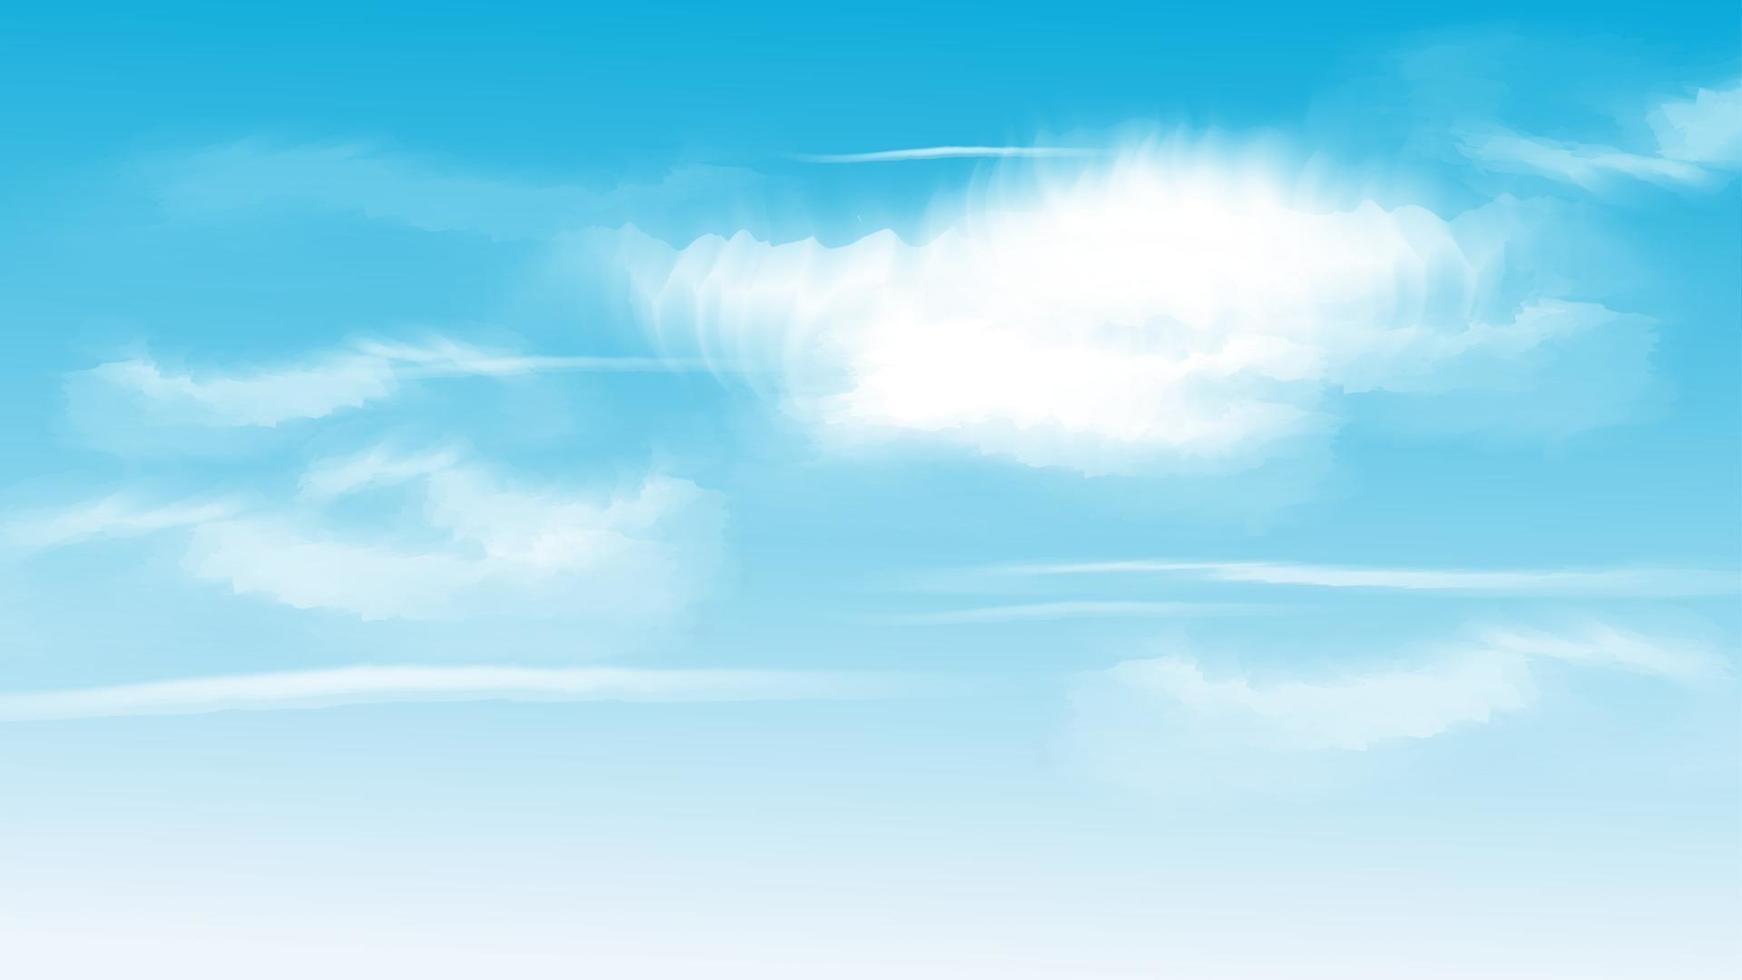 Himmelwolken Vektorillustration. vektor